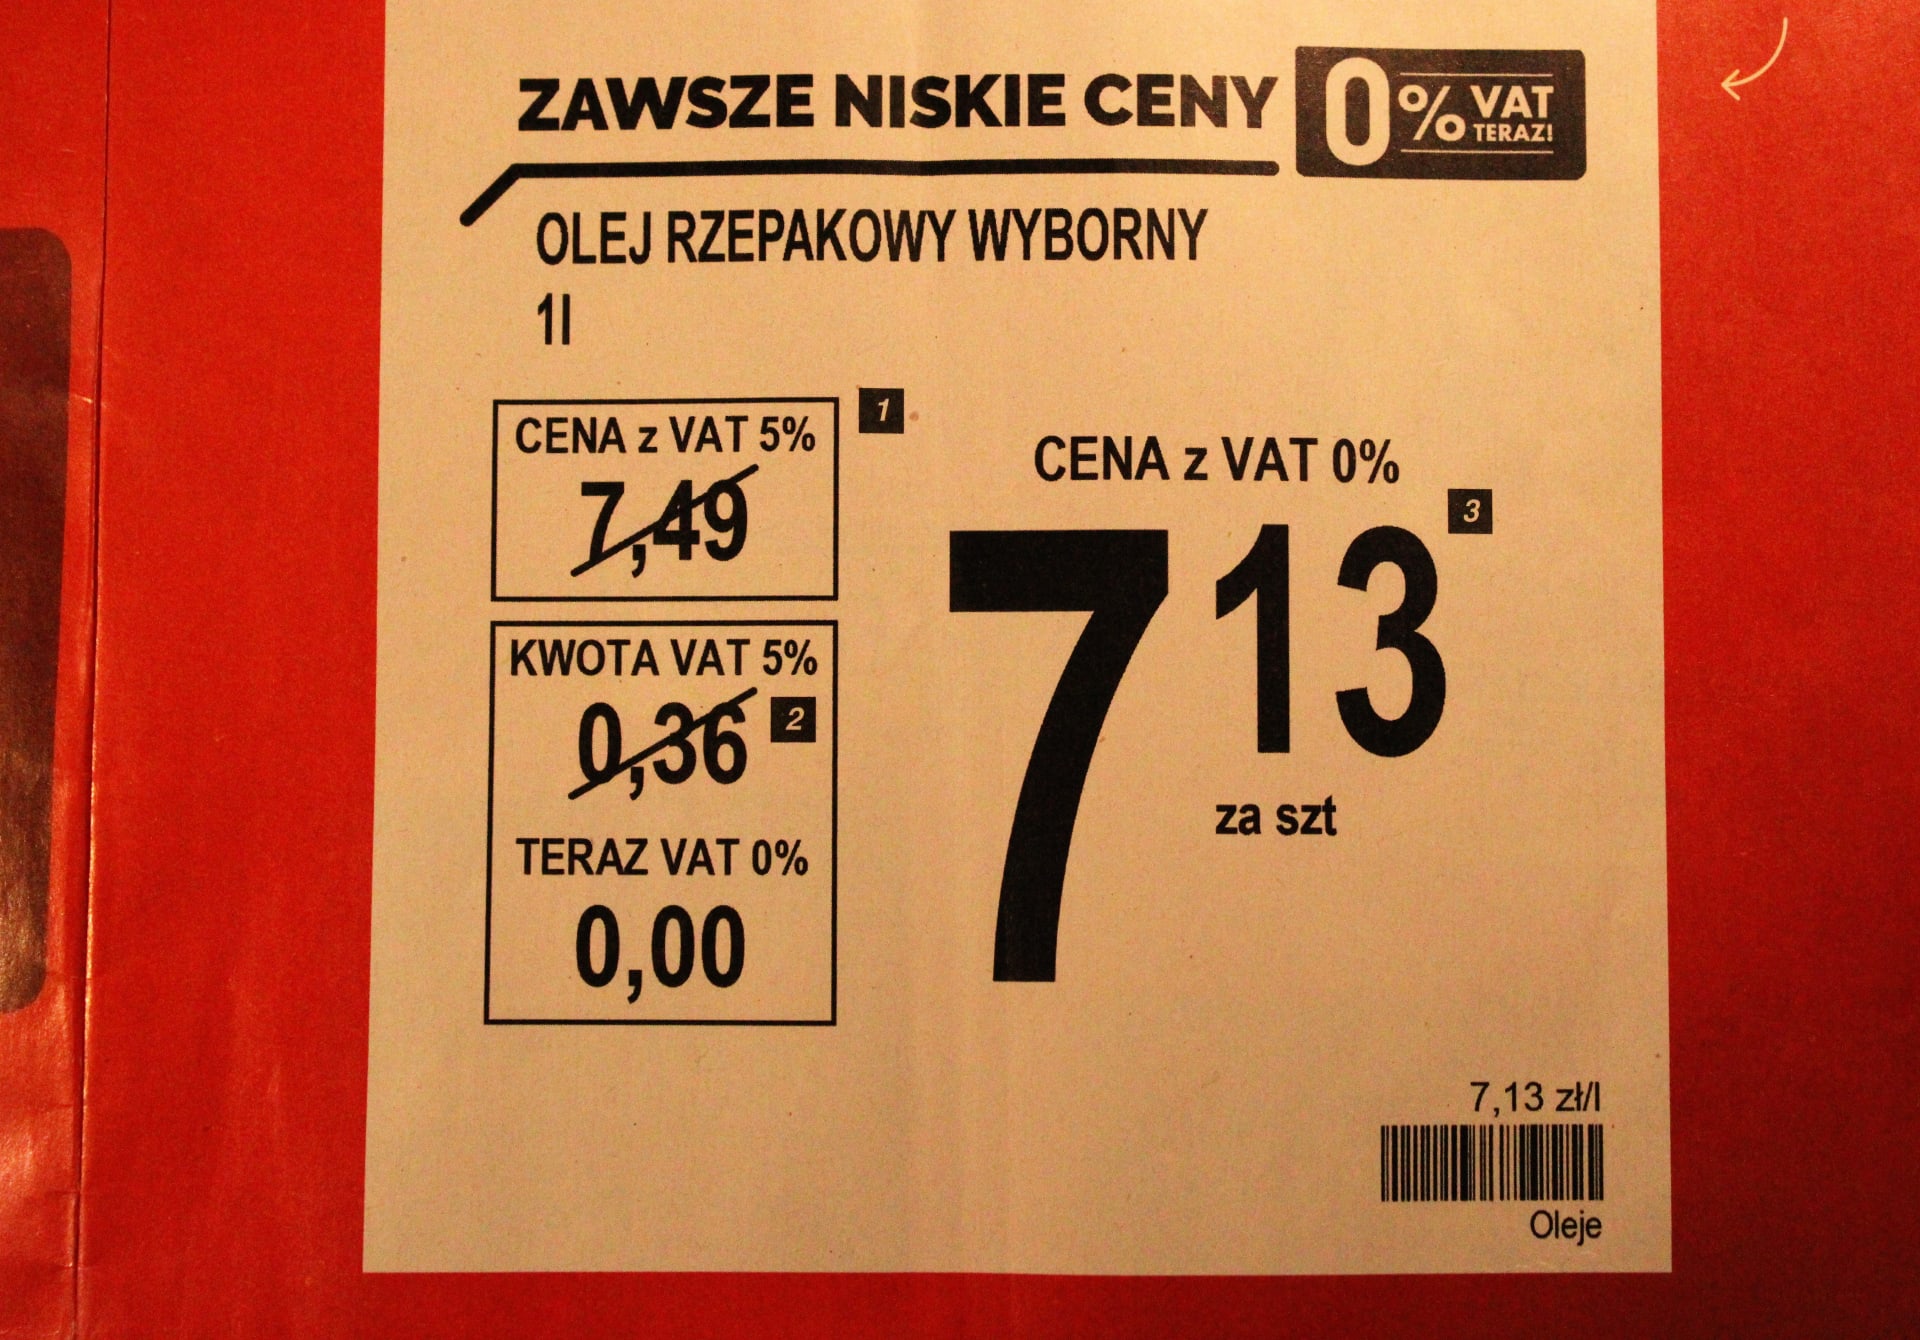 Řetězec Biedronka nabízí bez DPH (polsky VAT) 3000 produktů.